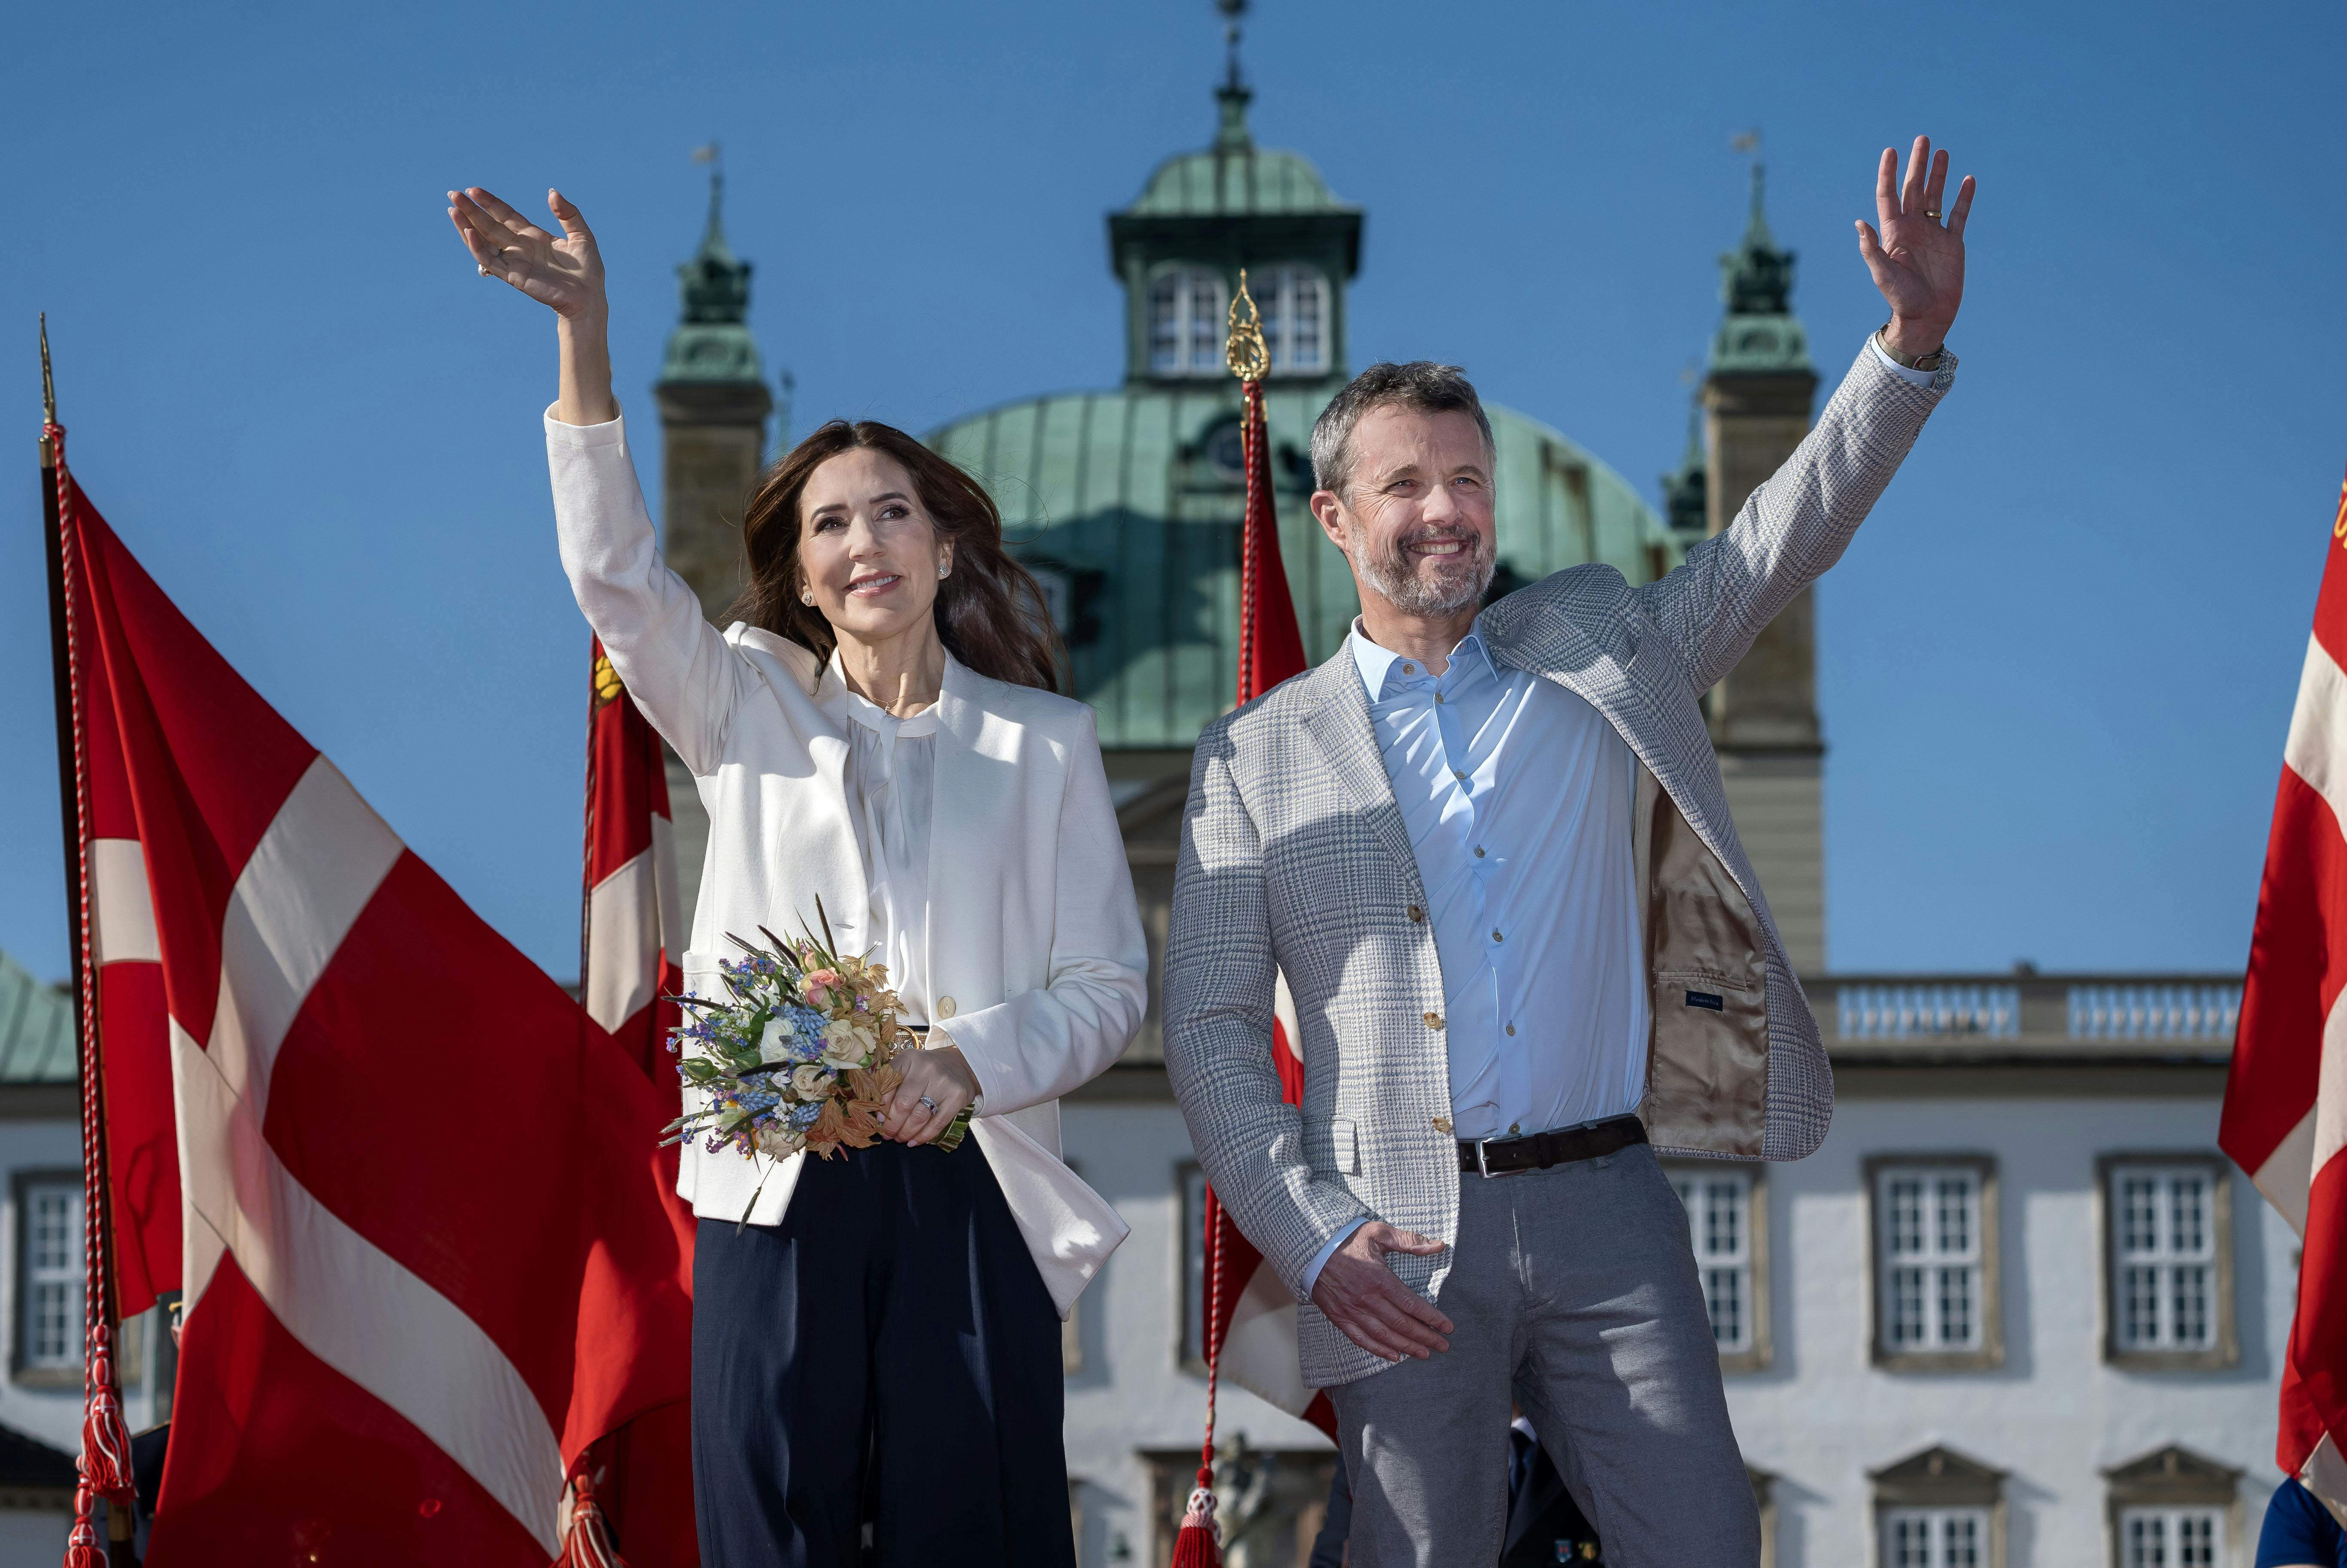 Det danske flag bliver erstattet af svenske, når dronning Mary og kong Frederik i næste uge er på statsbesøg i Sverige. 